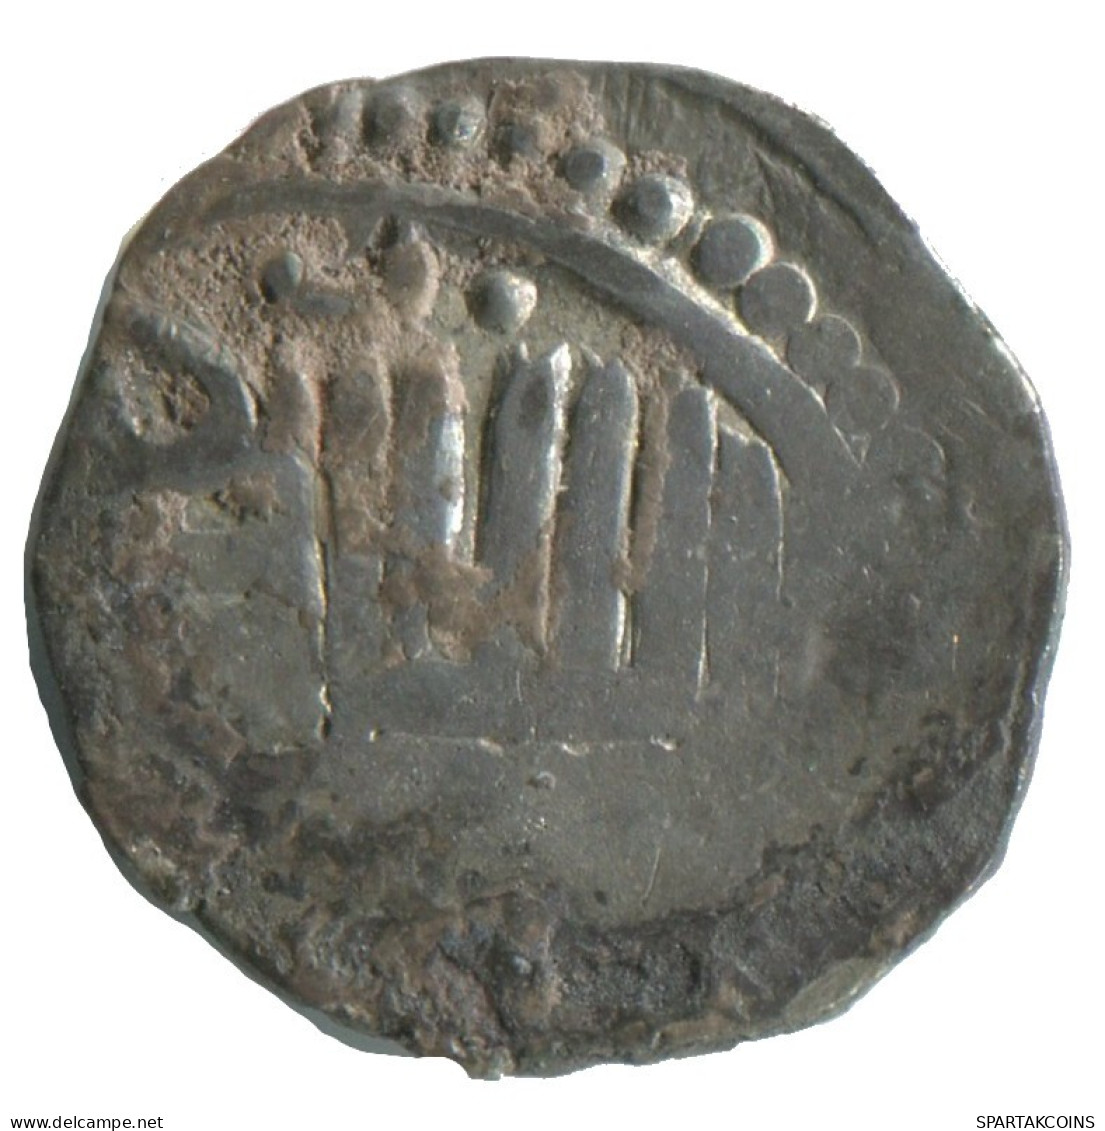 GOLDEN HORDE Silver Dirham Medieval Islamic Coin 1.4g/16mm #NNN1999.8.E.A - Islamic